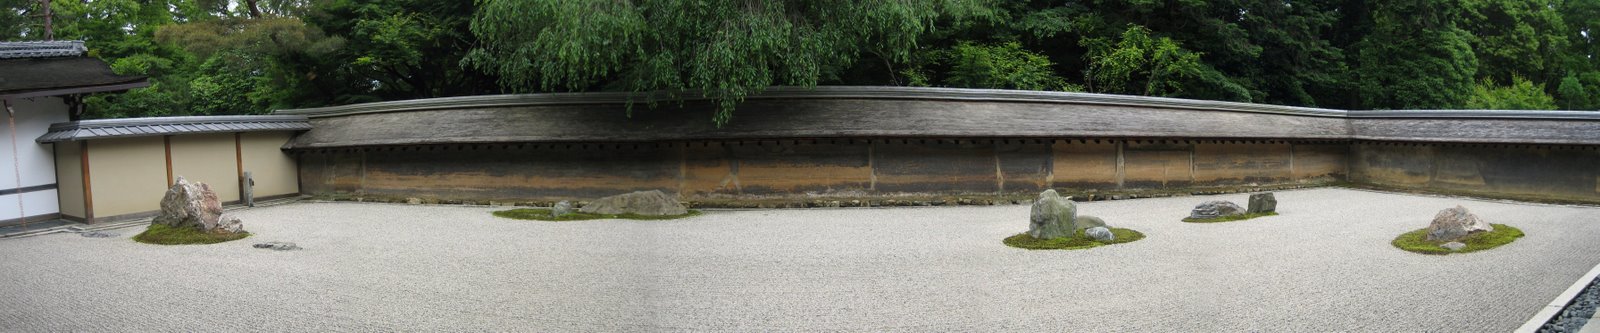 [ryoanji+temple+garden.jpg]